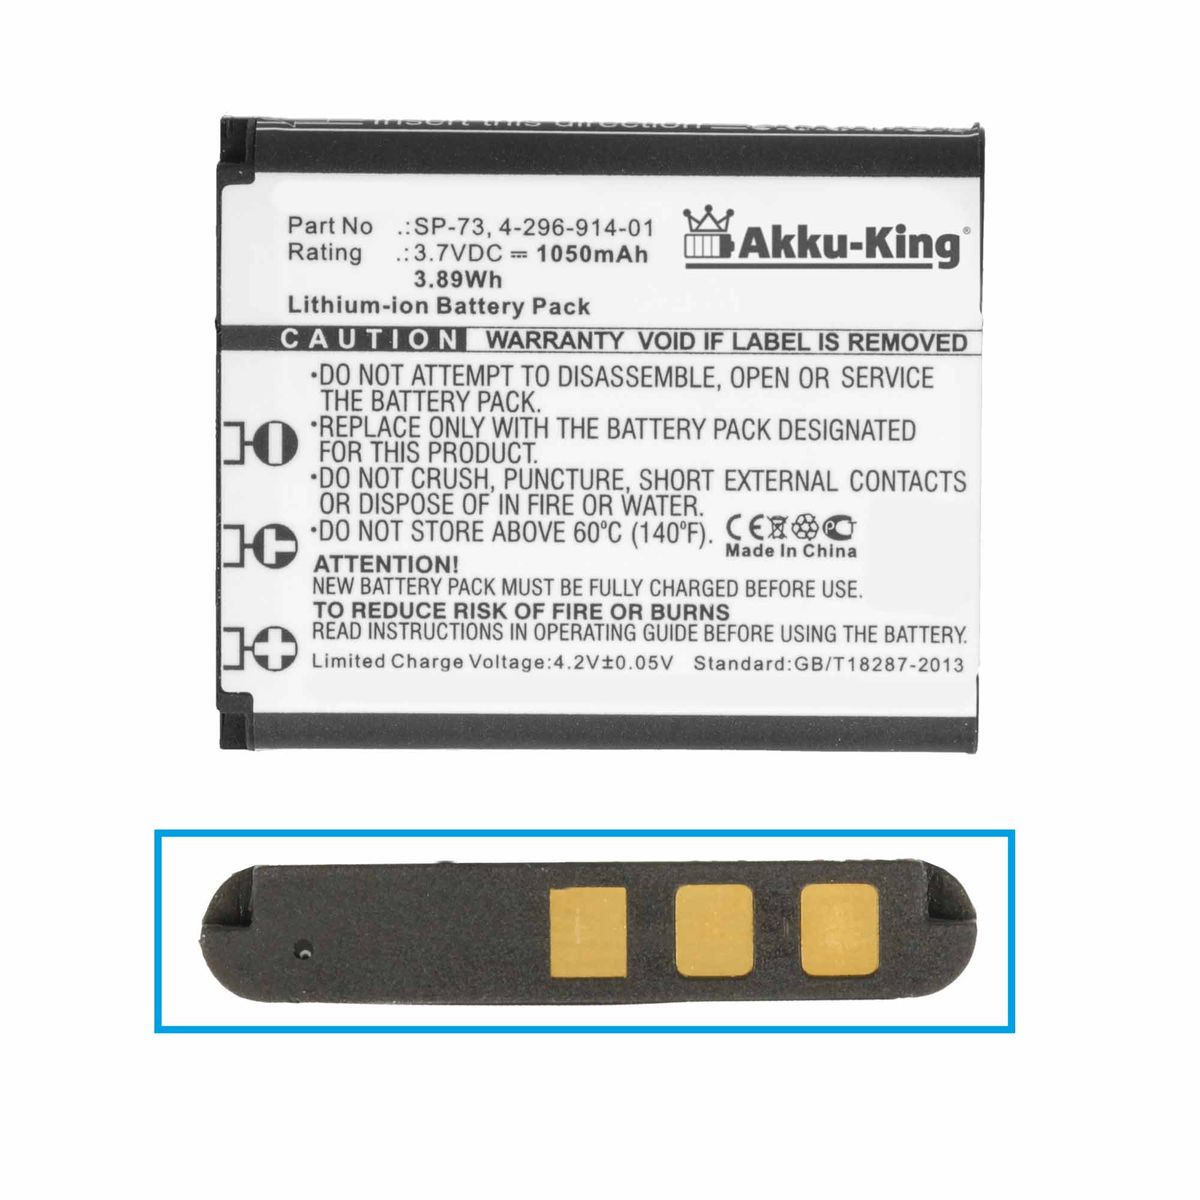 AKKU-KING Akku kompatibel 3.7 Volt, Li-Ion Sony Geräte-Akku, mit SP-73 1050mAh